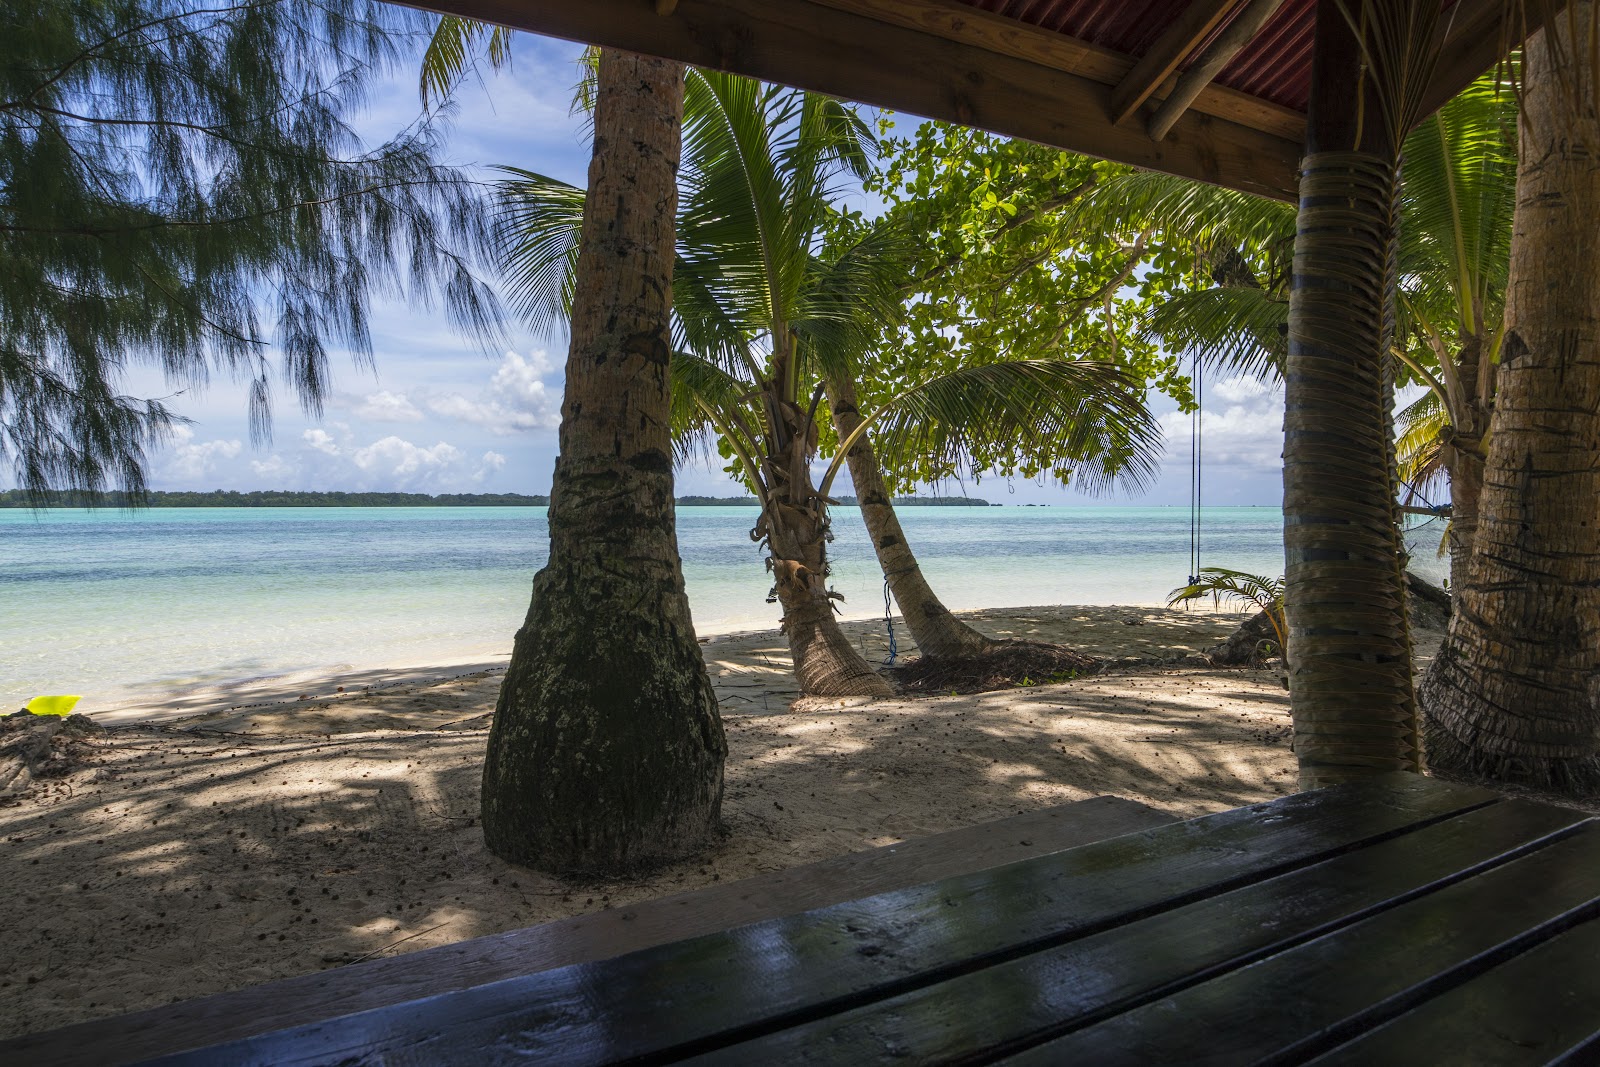 Fotografie cu Carp Island Resort - locul popular printre cunoscătorii de relaxare